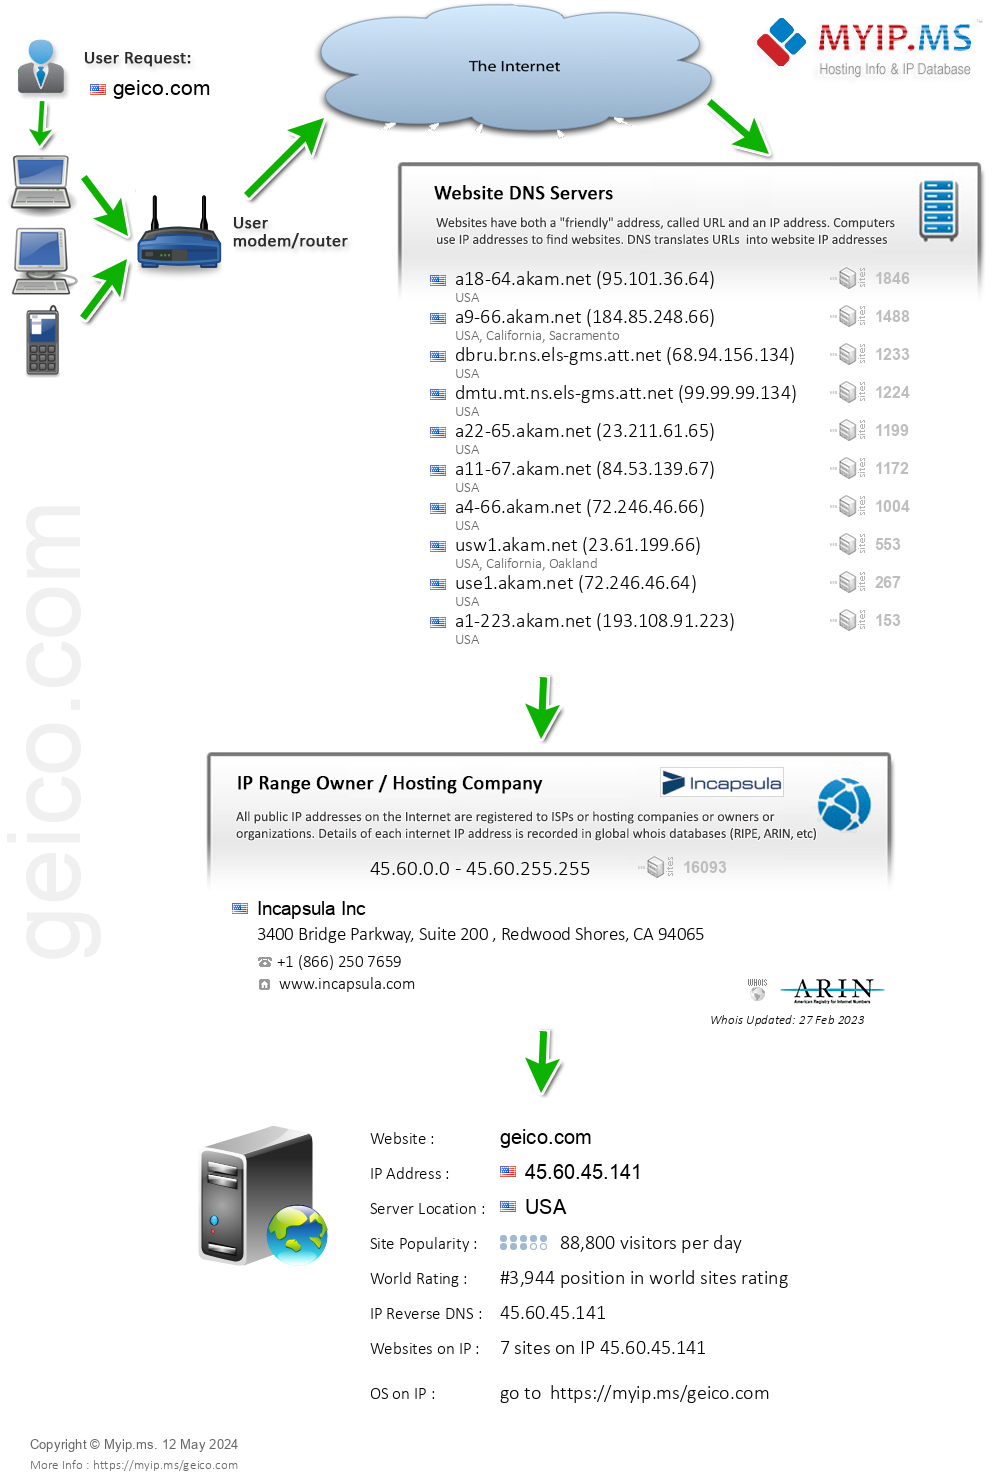 Geico.com - Website Hosting Visual IP Diagram